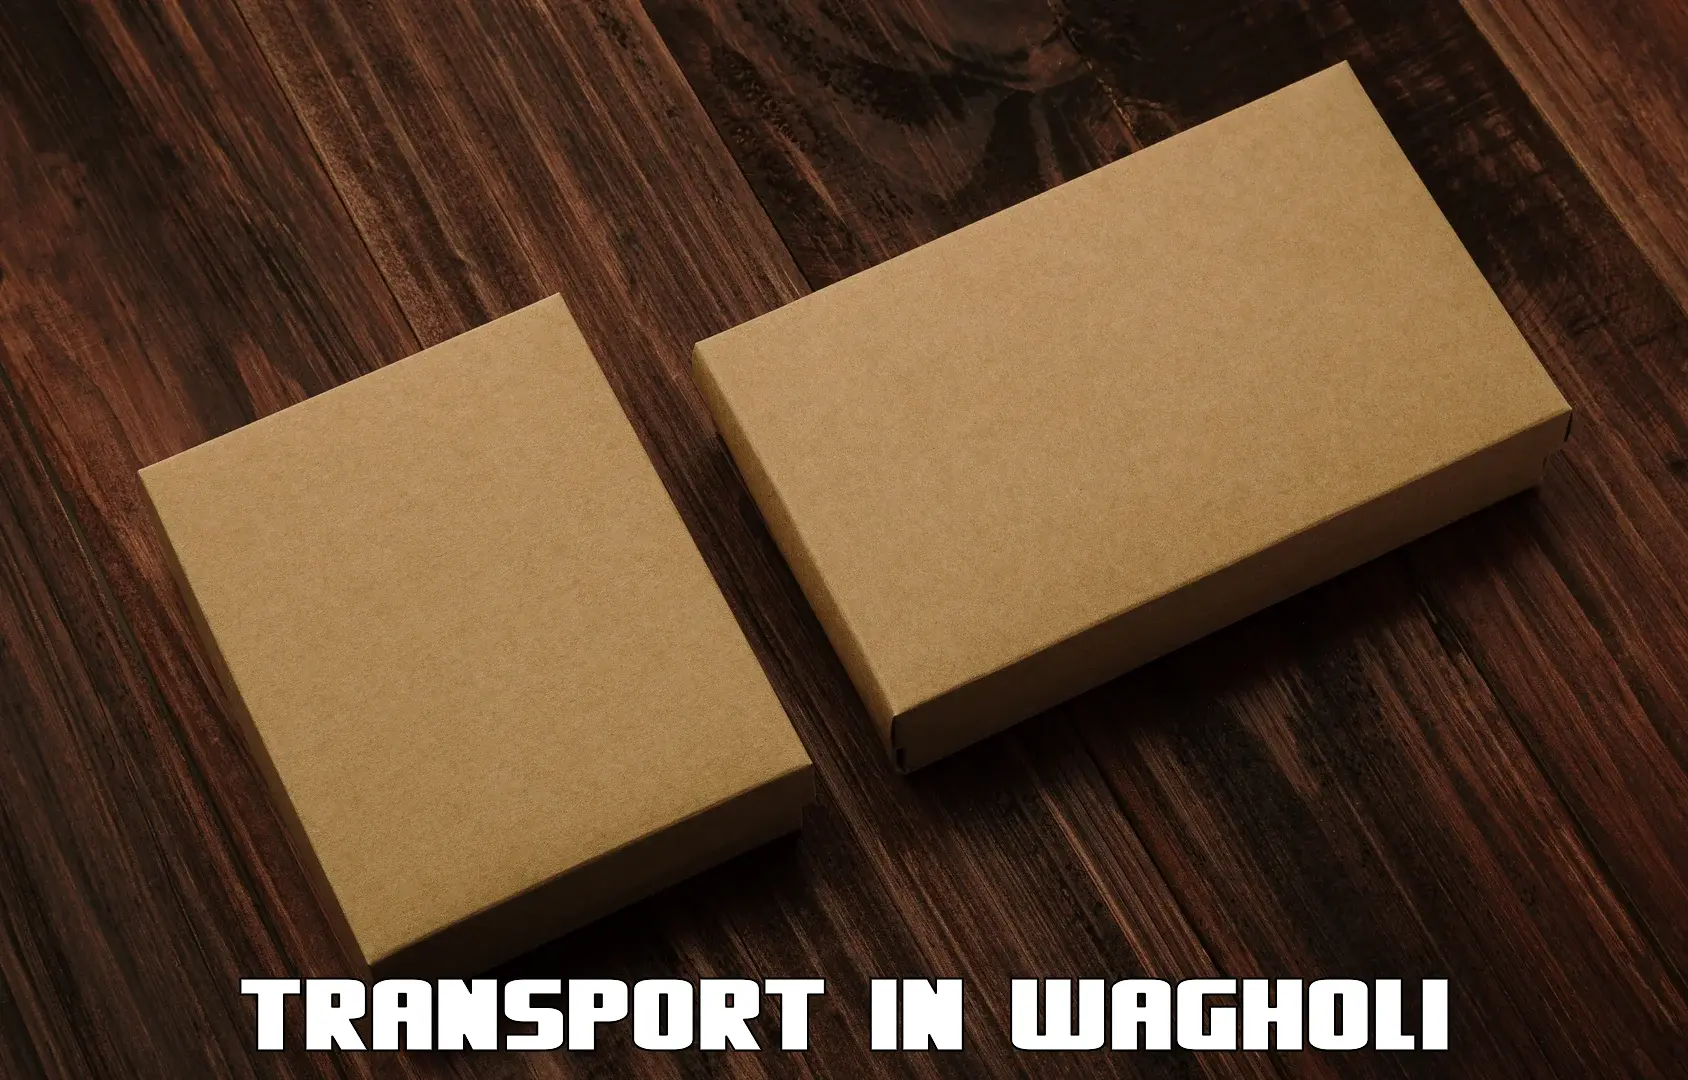 Furniture transport service in Wagholi